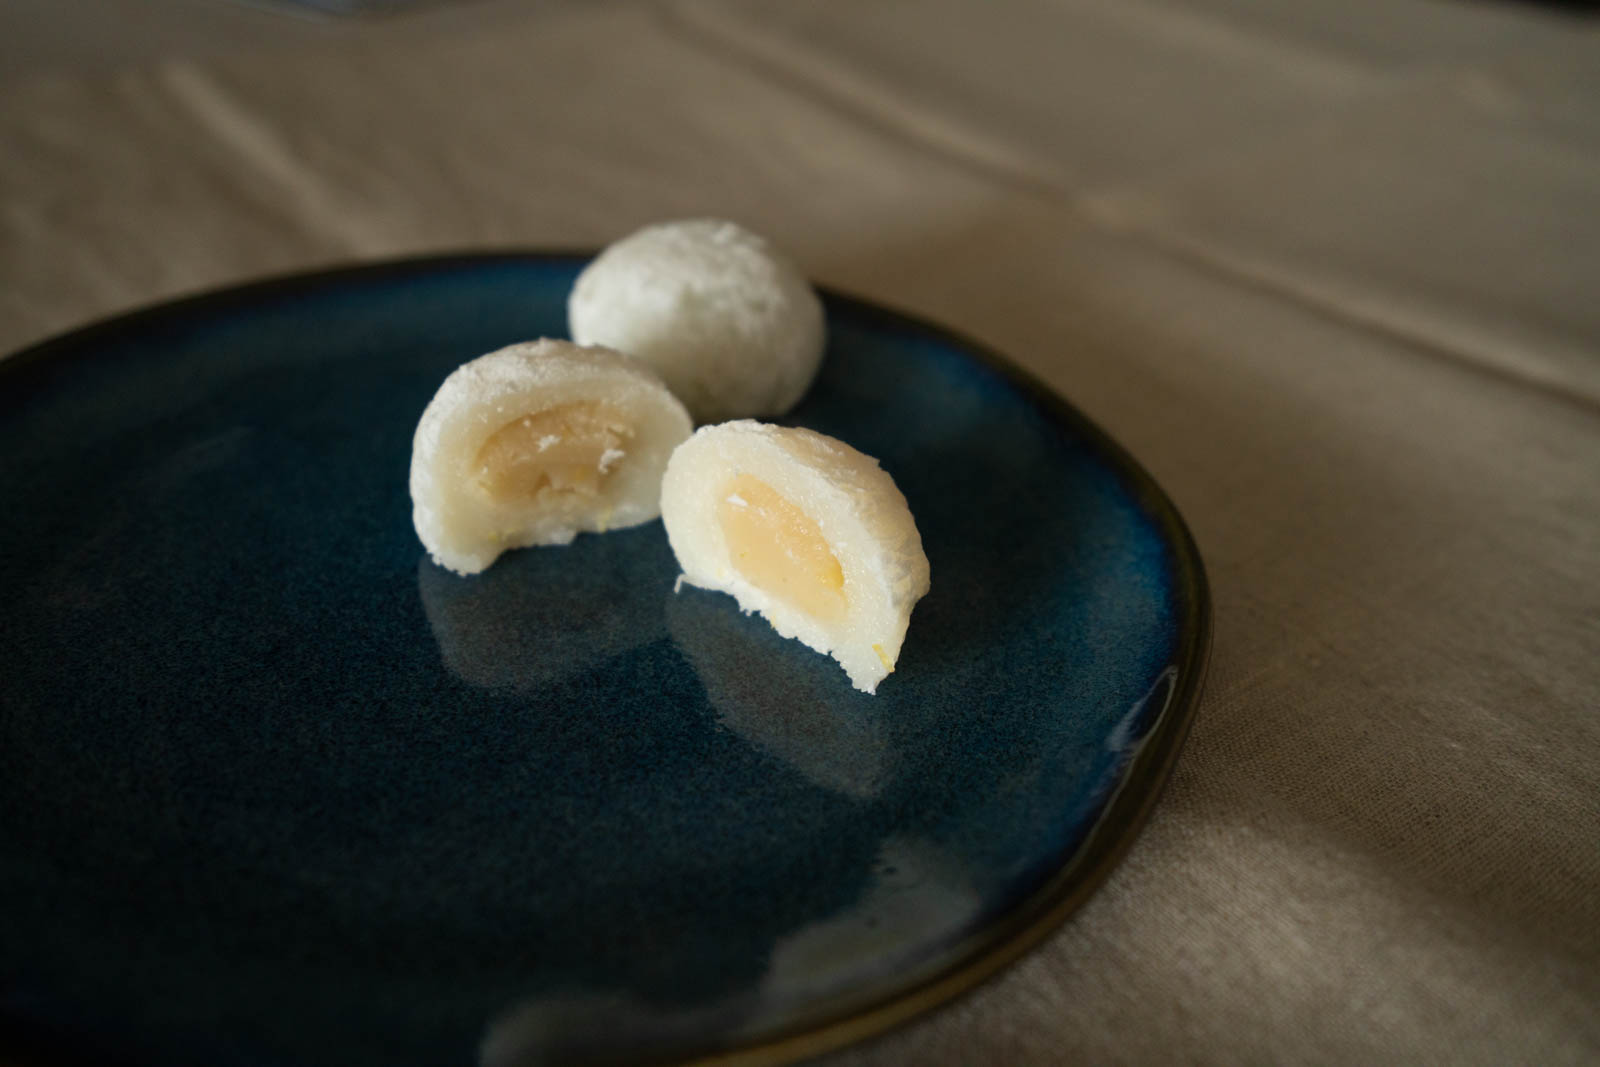 lemon mochi, lemon and white bean paste shiroan